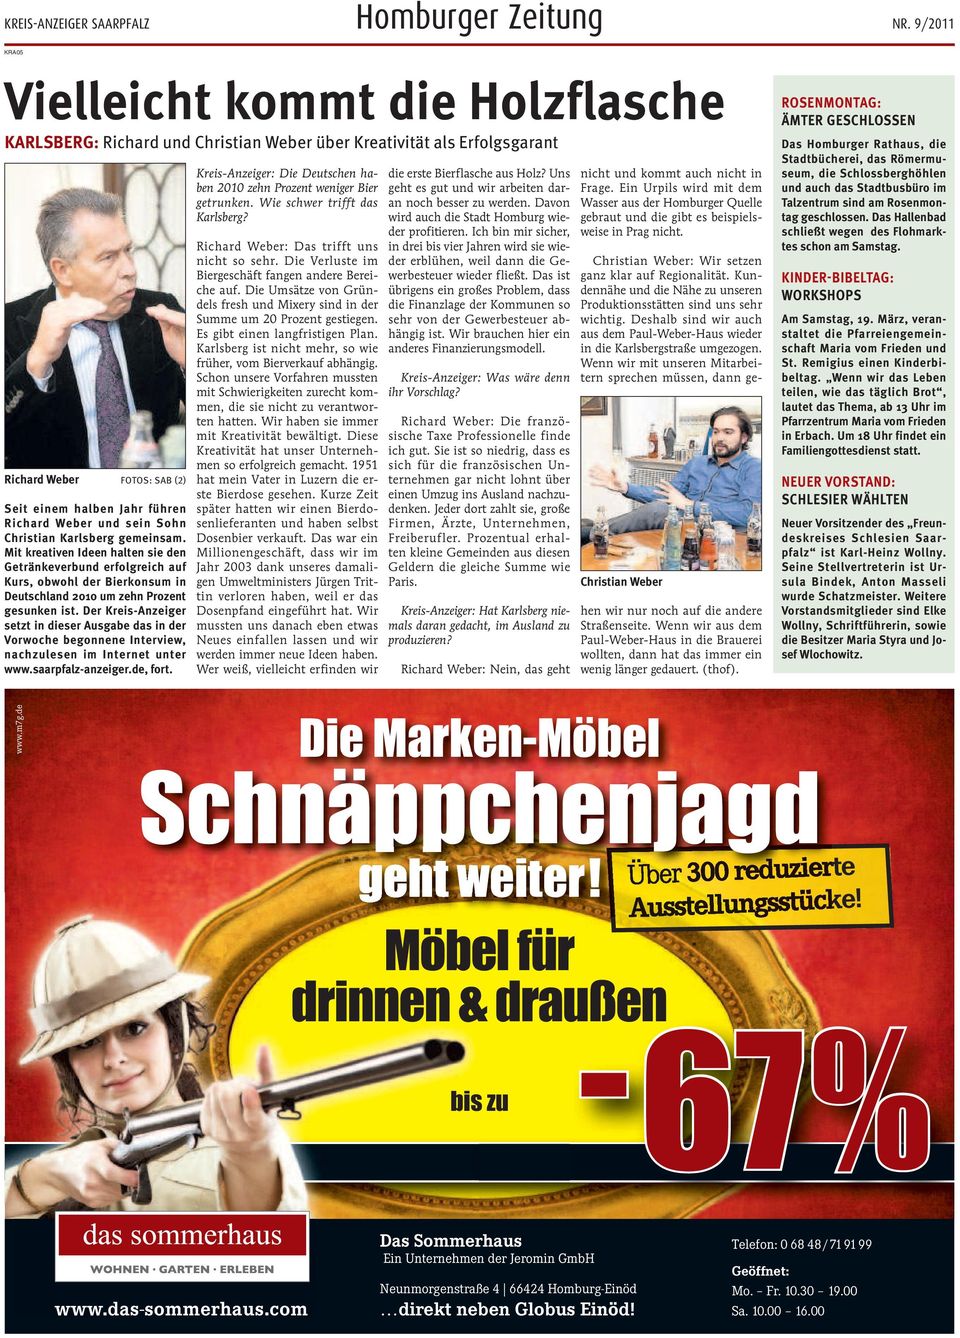 Der Kreis-Anzeiger setzt in dieser Ausgabe das in der Vorwoche begonnene Interview, nachzulesen im Internet unter www.saarpfalz-anzeiger.de, fort.